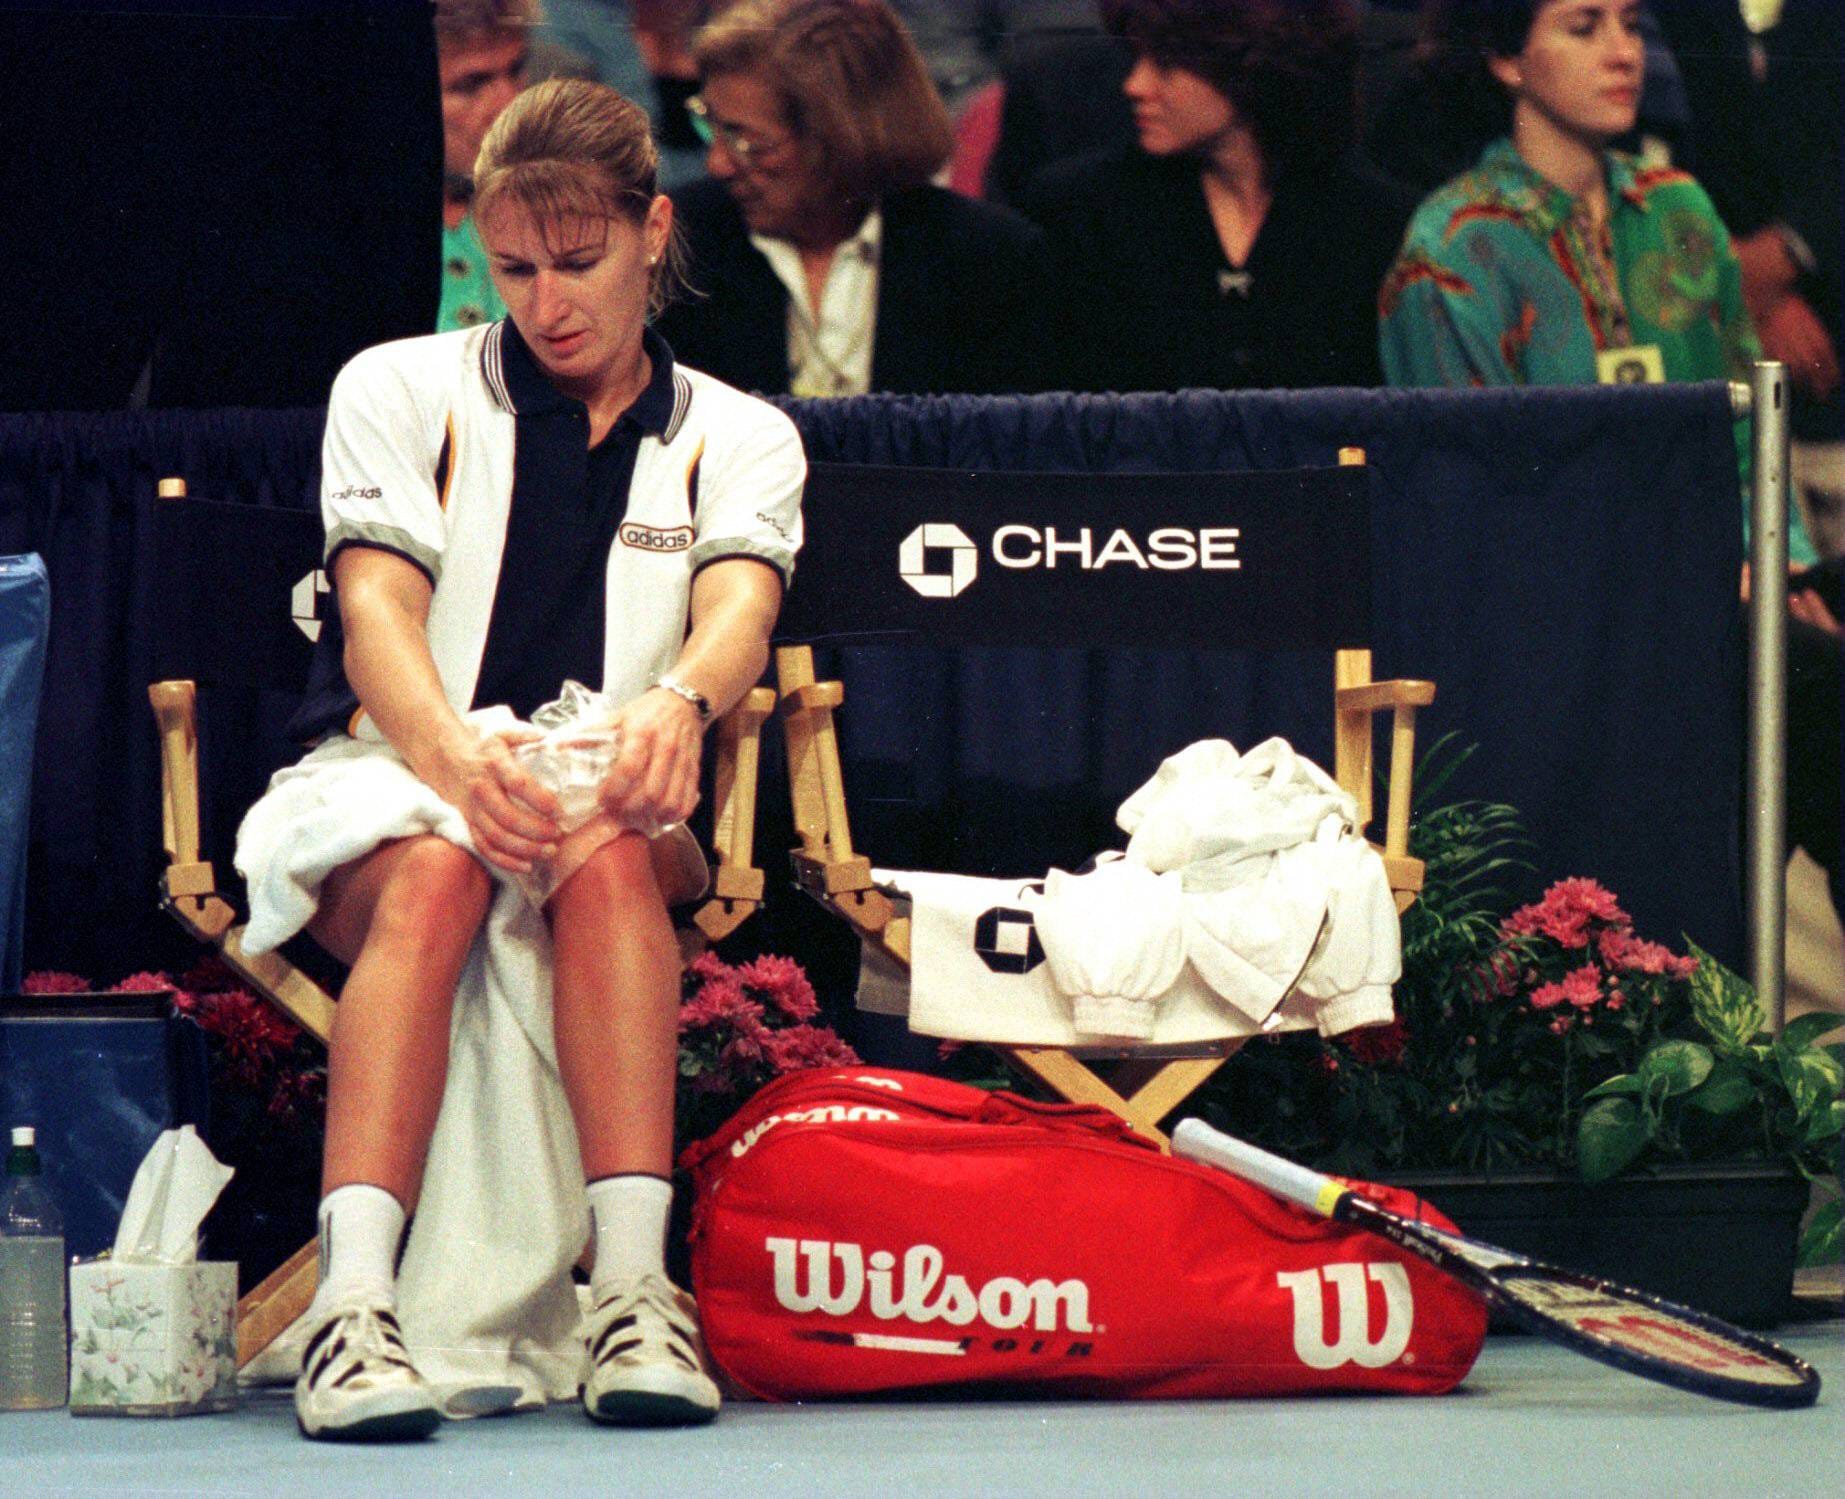 Immer wieder das Knie: 1997 muss Graf vorm Finale in Tokio absagen, weil die Schmerzen zu groß sind. Doch sie soll noch einmal wiederkommen.